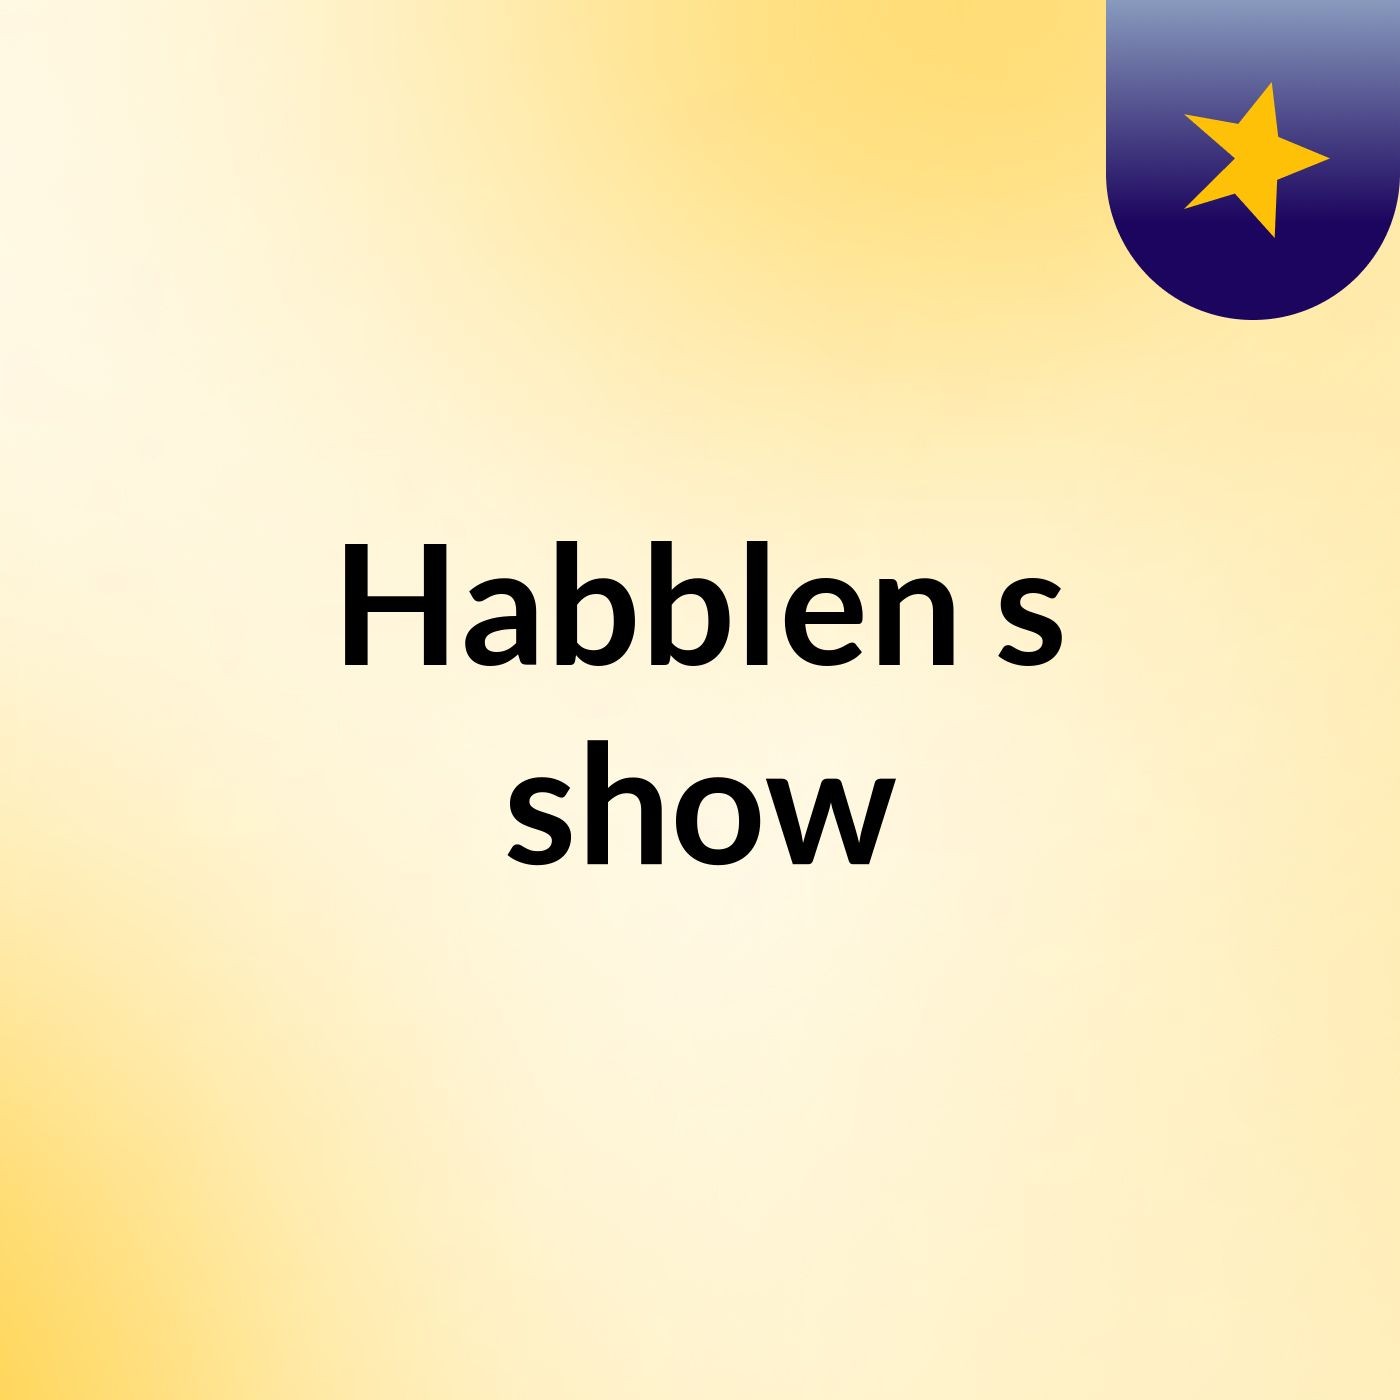 Habblen's show